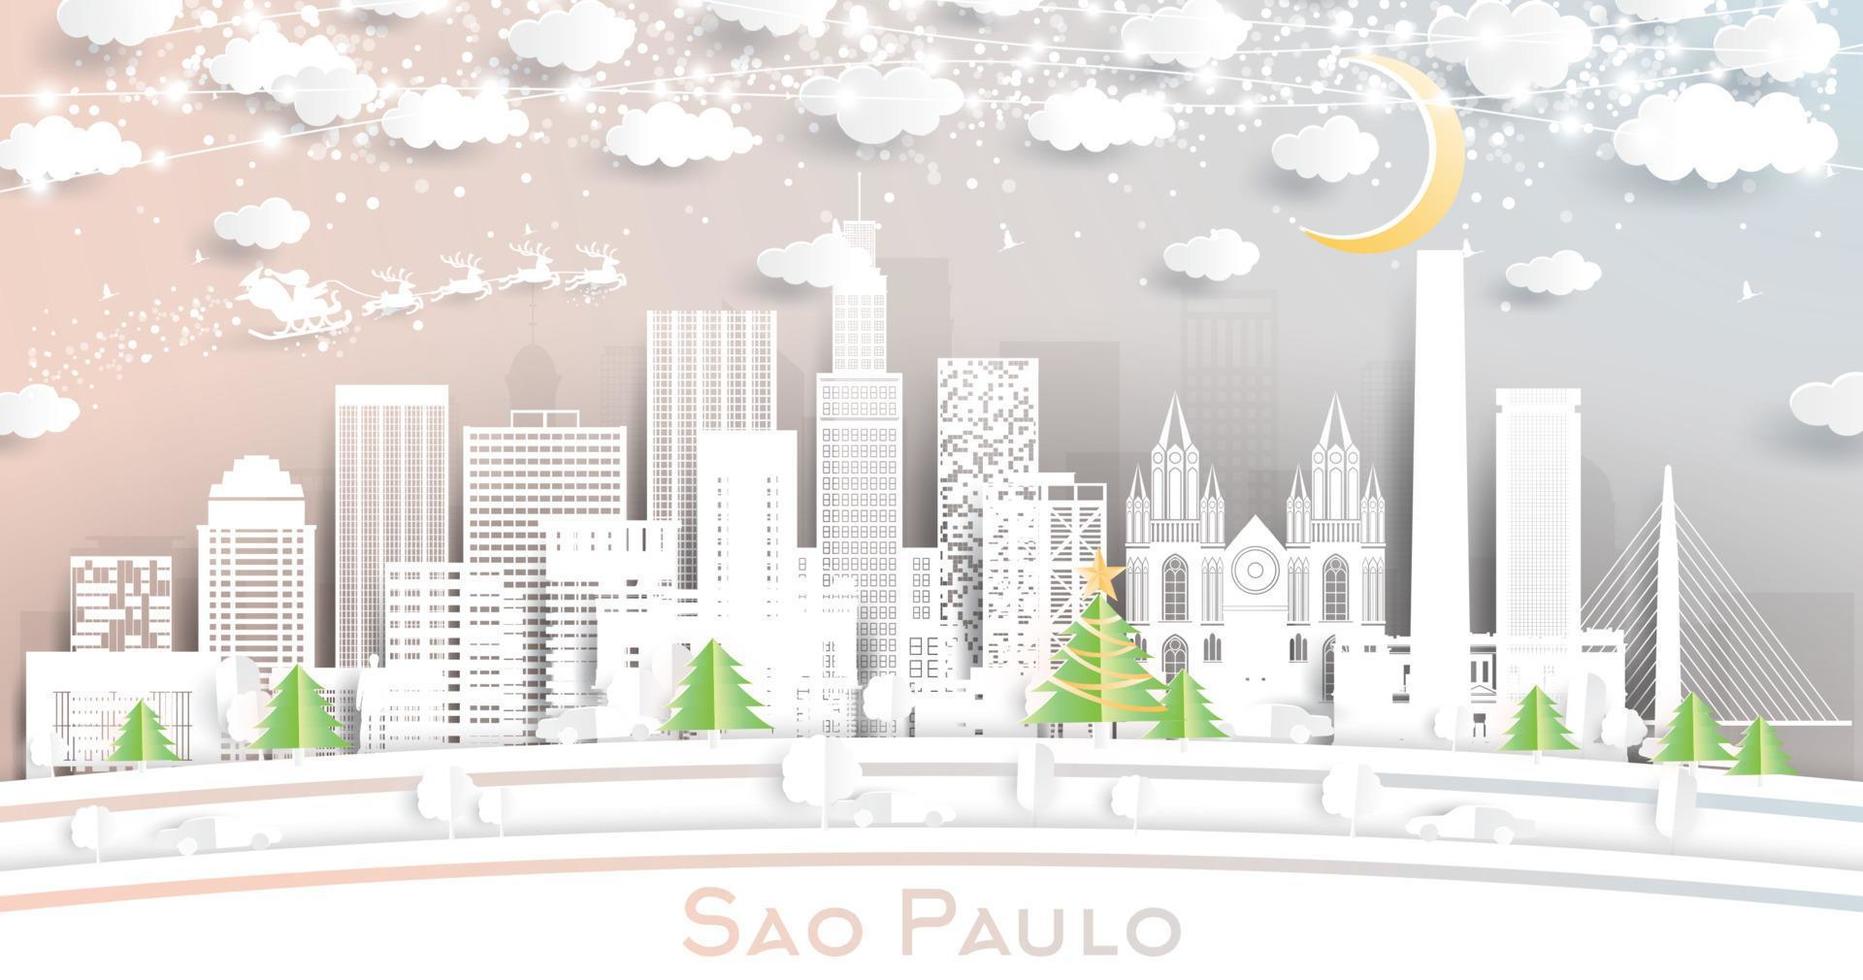 horizonte de la ciudad de sao paulo brasil en estilo de corte de papel con copos de nieve, luna y guirnalda de neón. vector